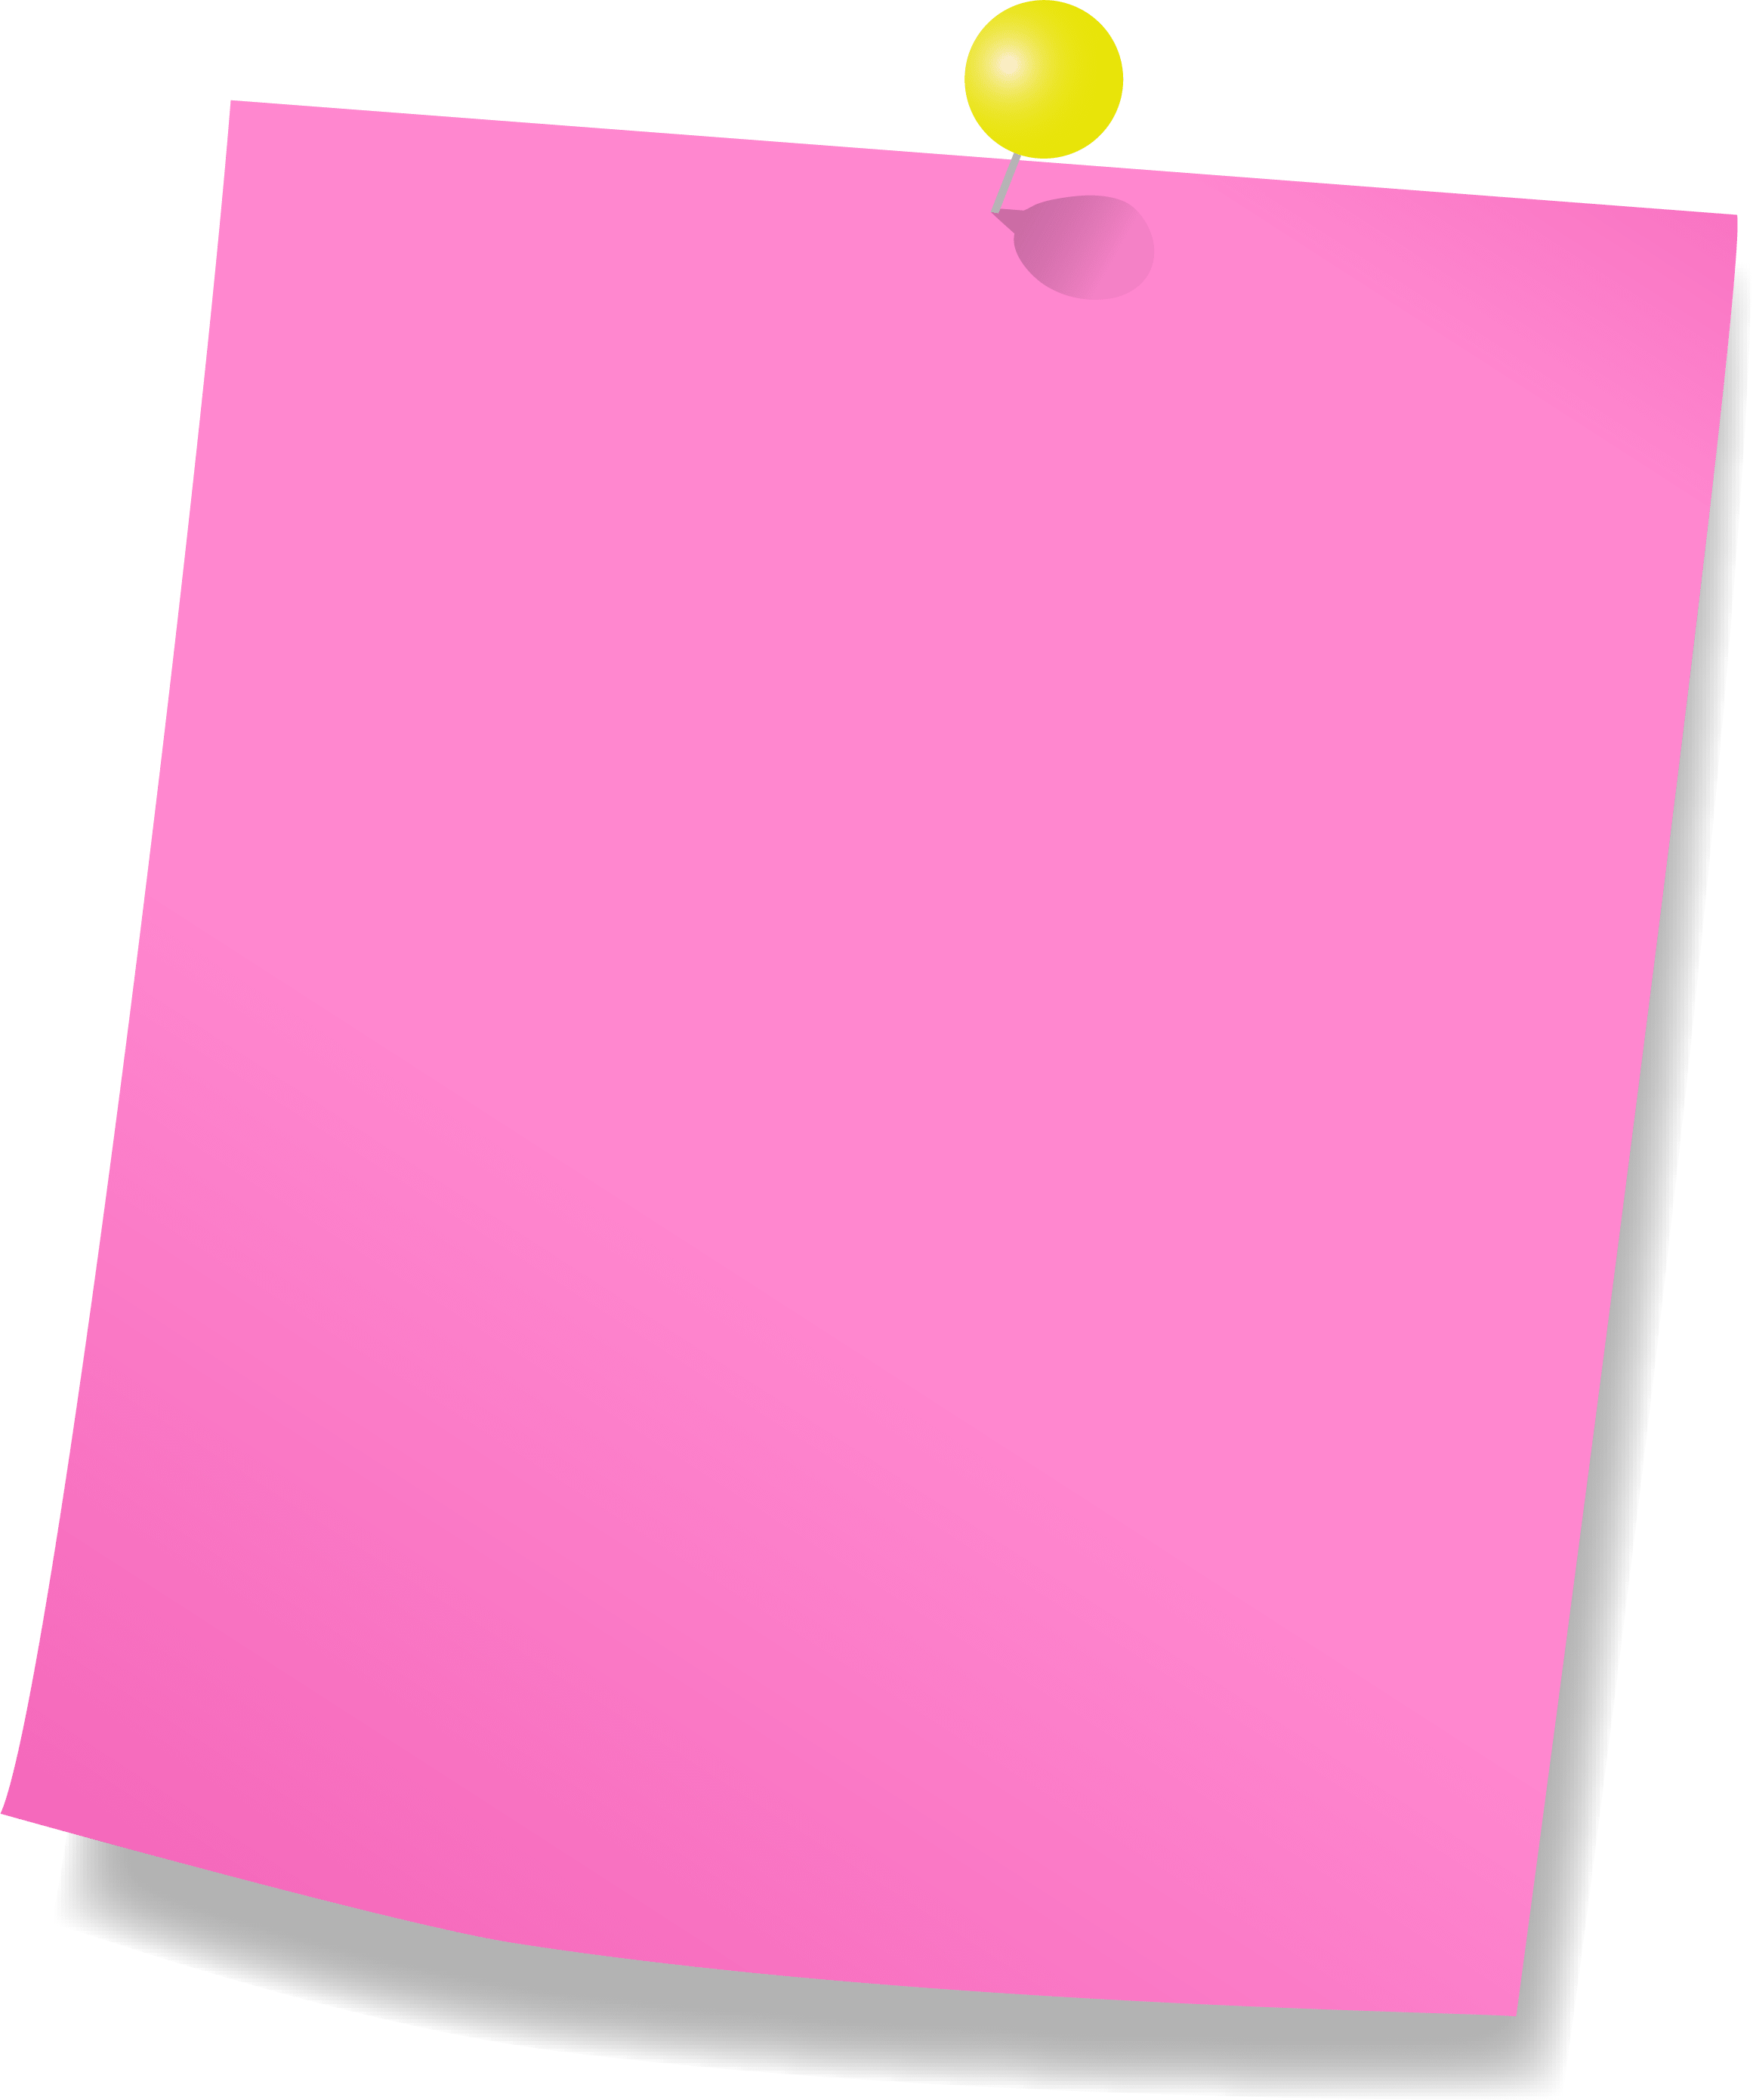 黄色のプッシュピンとピンクのメモ用紙のフレーム飾り枠